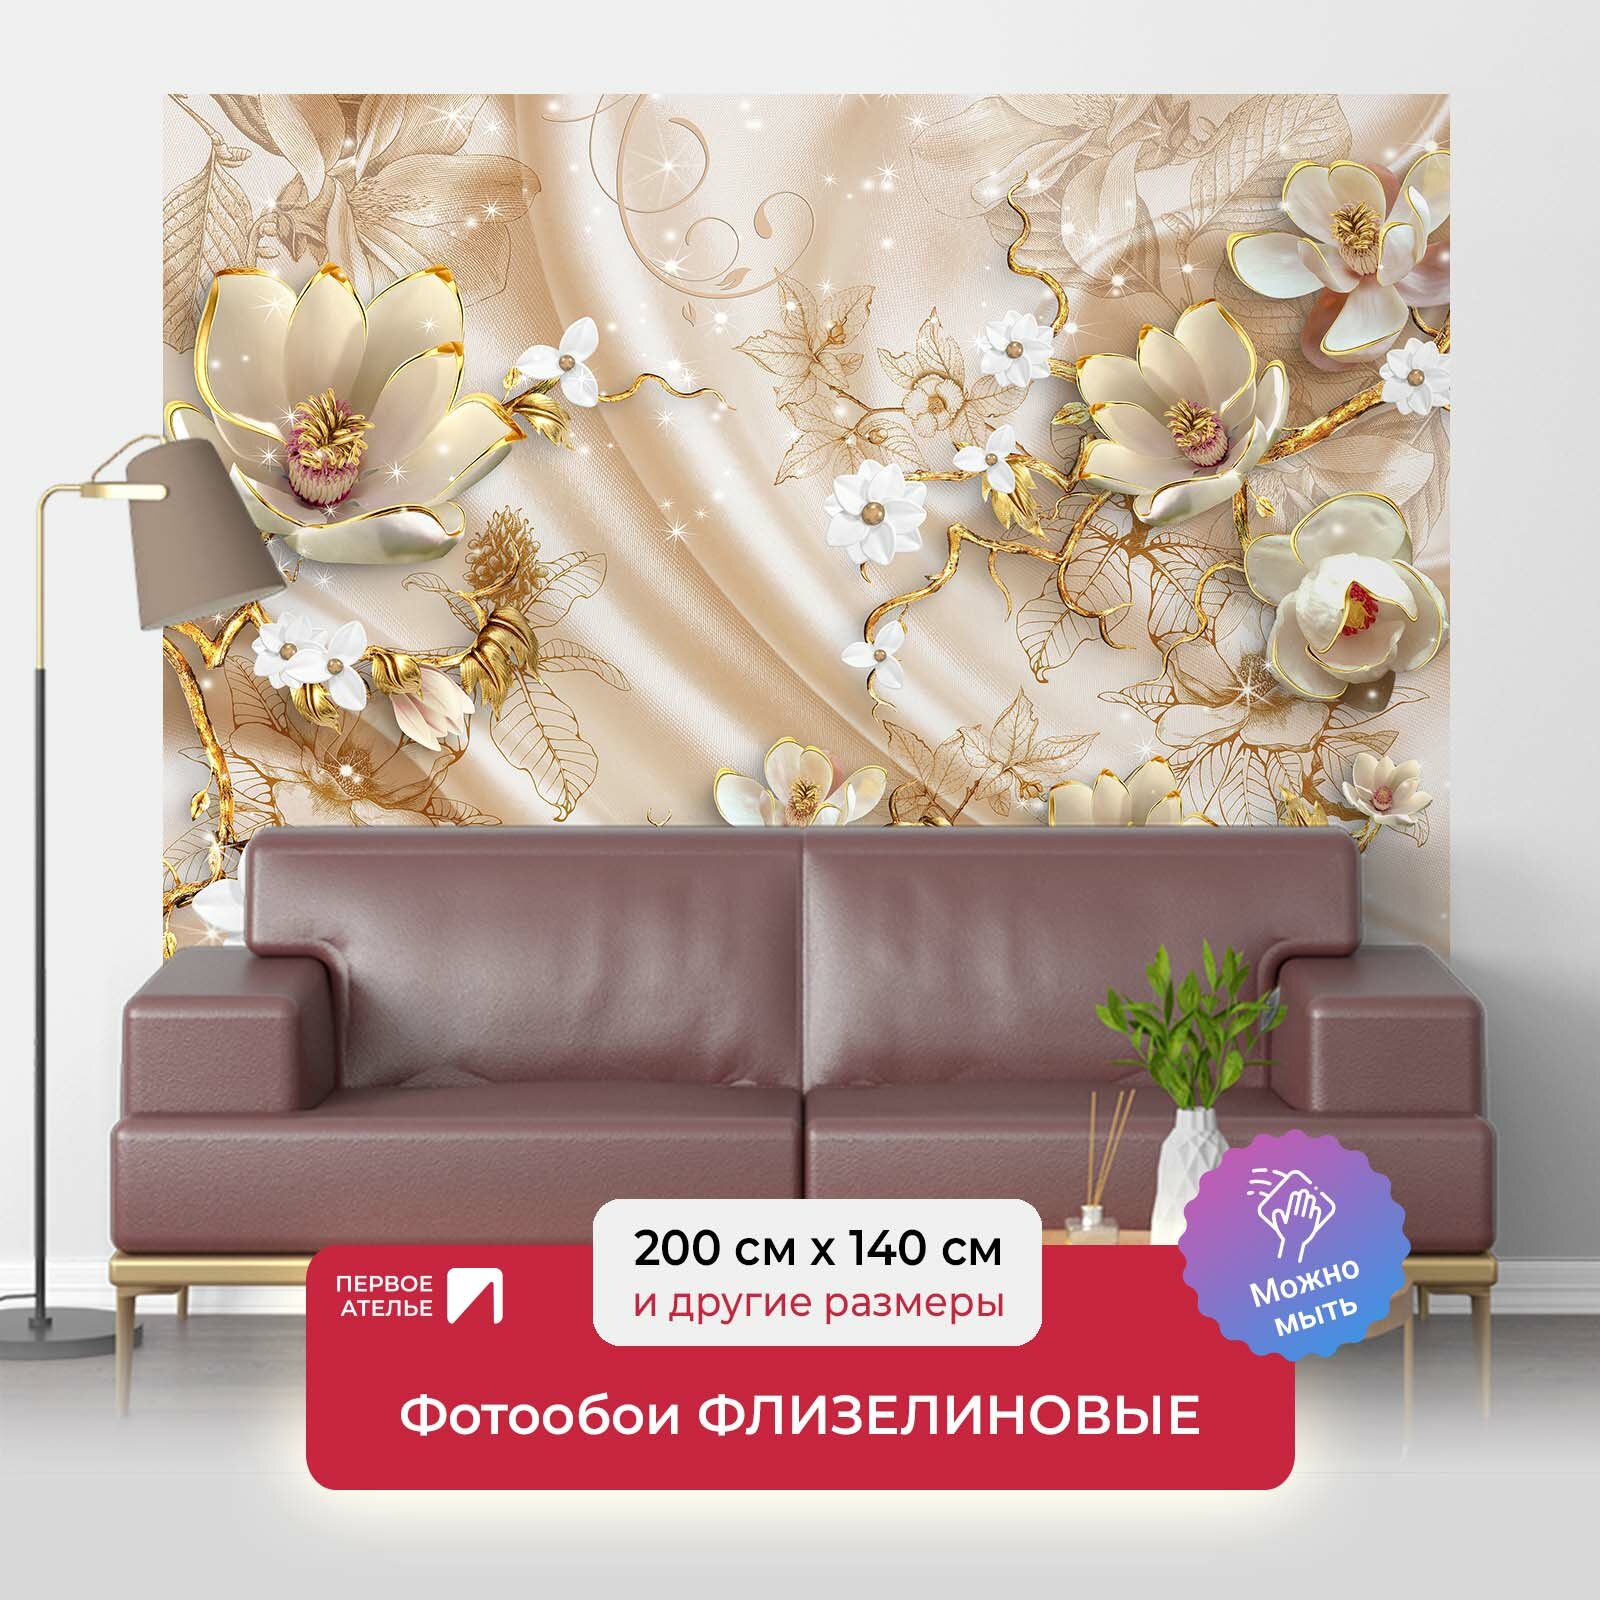 Фотообои на стену первое ателье "Объемные цветы на ткани" 200х140 см (ШхВ), флизелиновые Premium